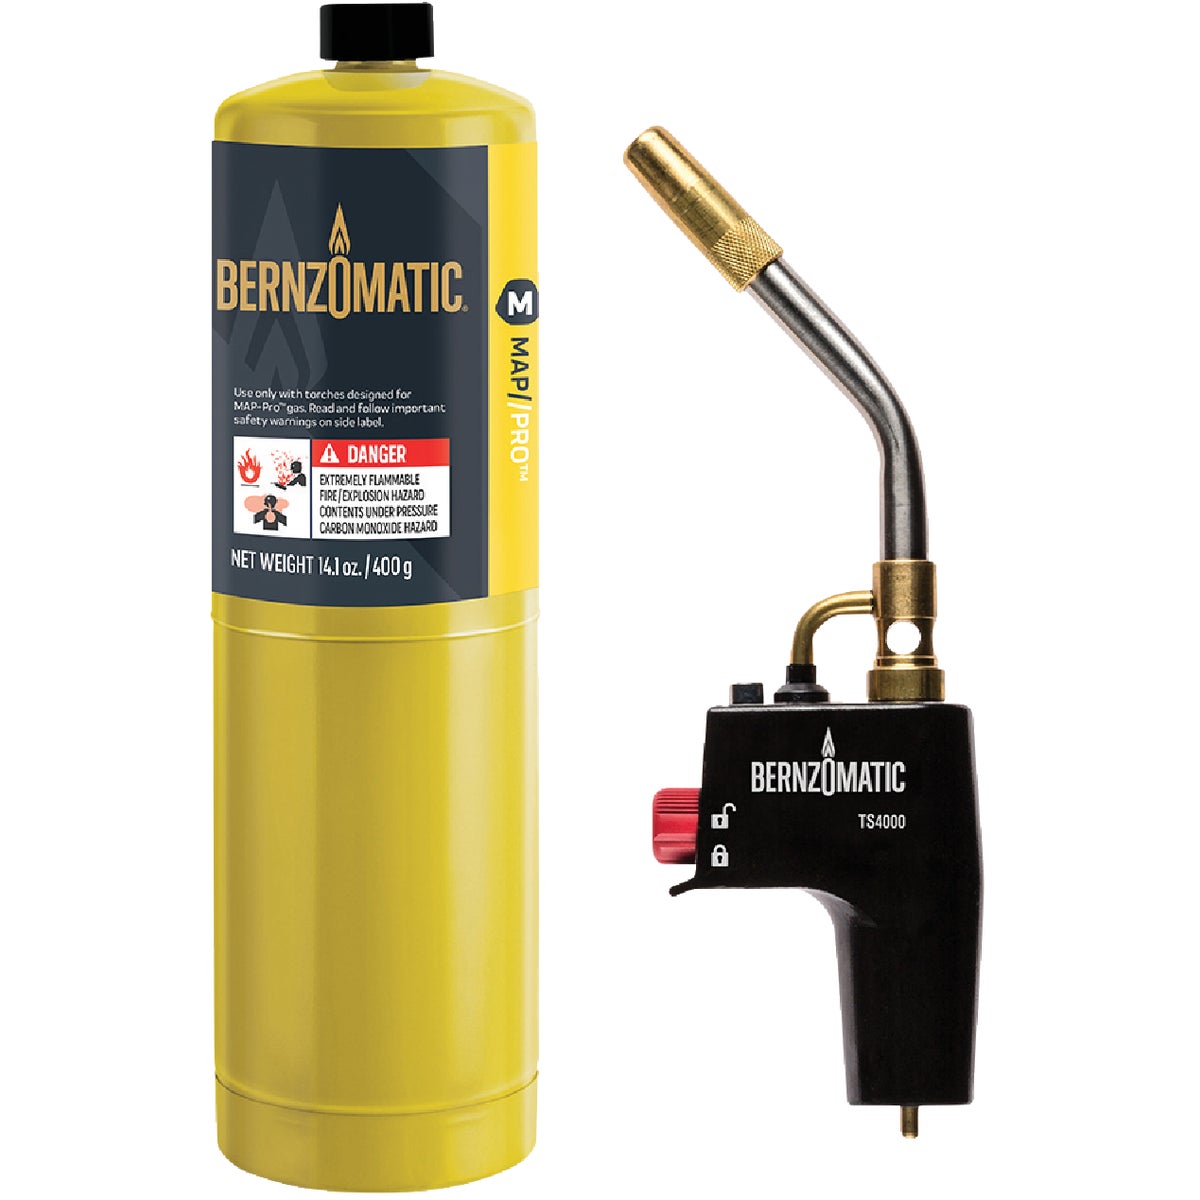 Bernzomatic MAP/PRO High Heat Torch Kit